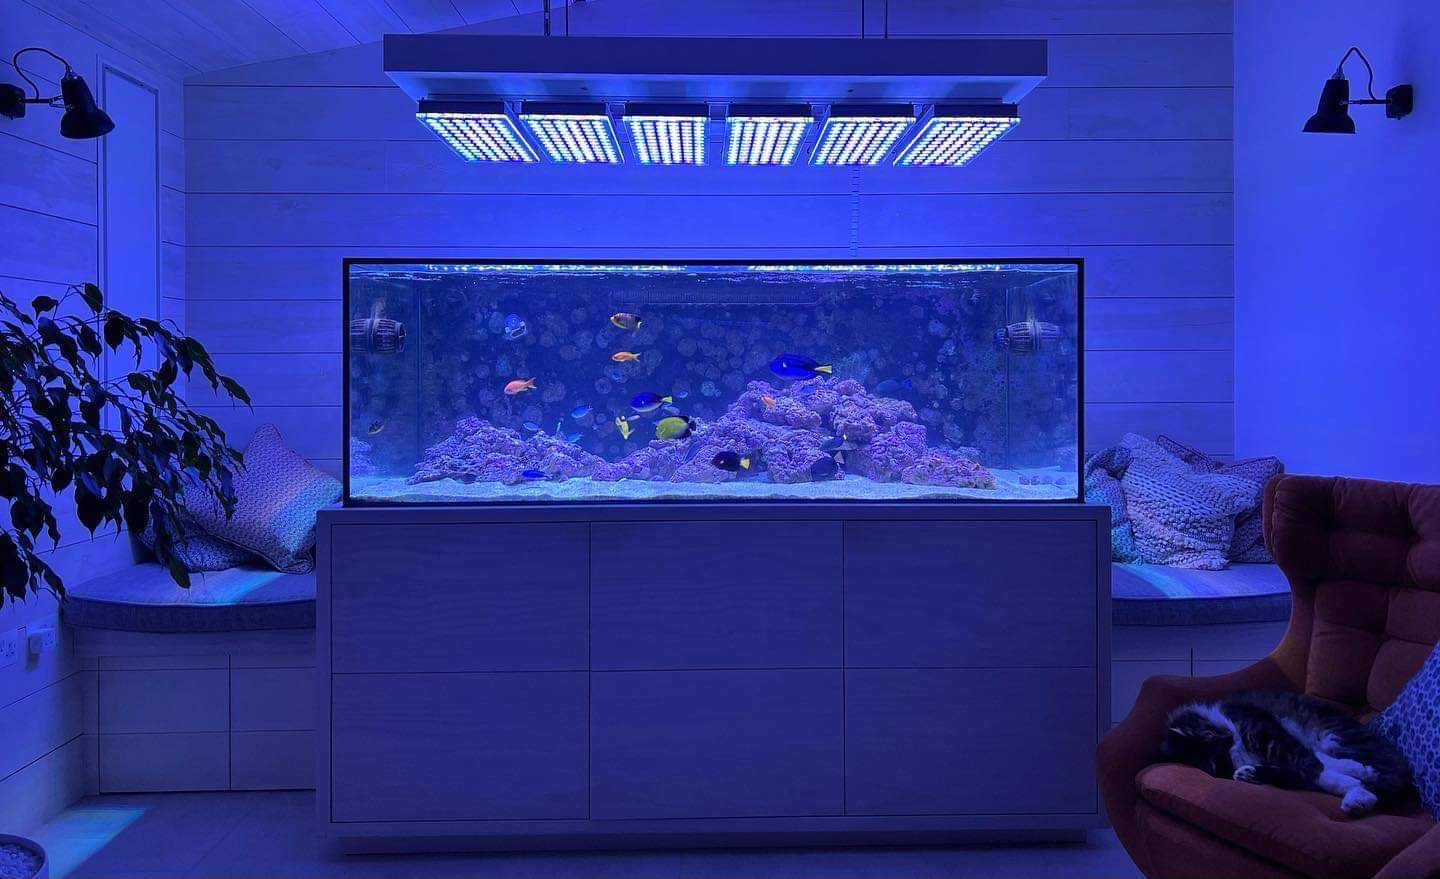 Reef_aquarium_suspends_system_for_Atlantik_iCon_LED_Lighting_placement